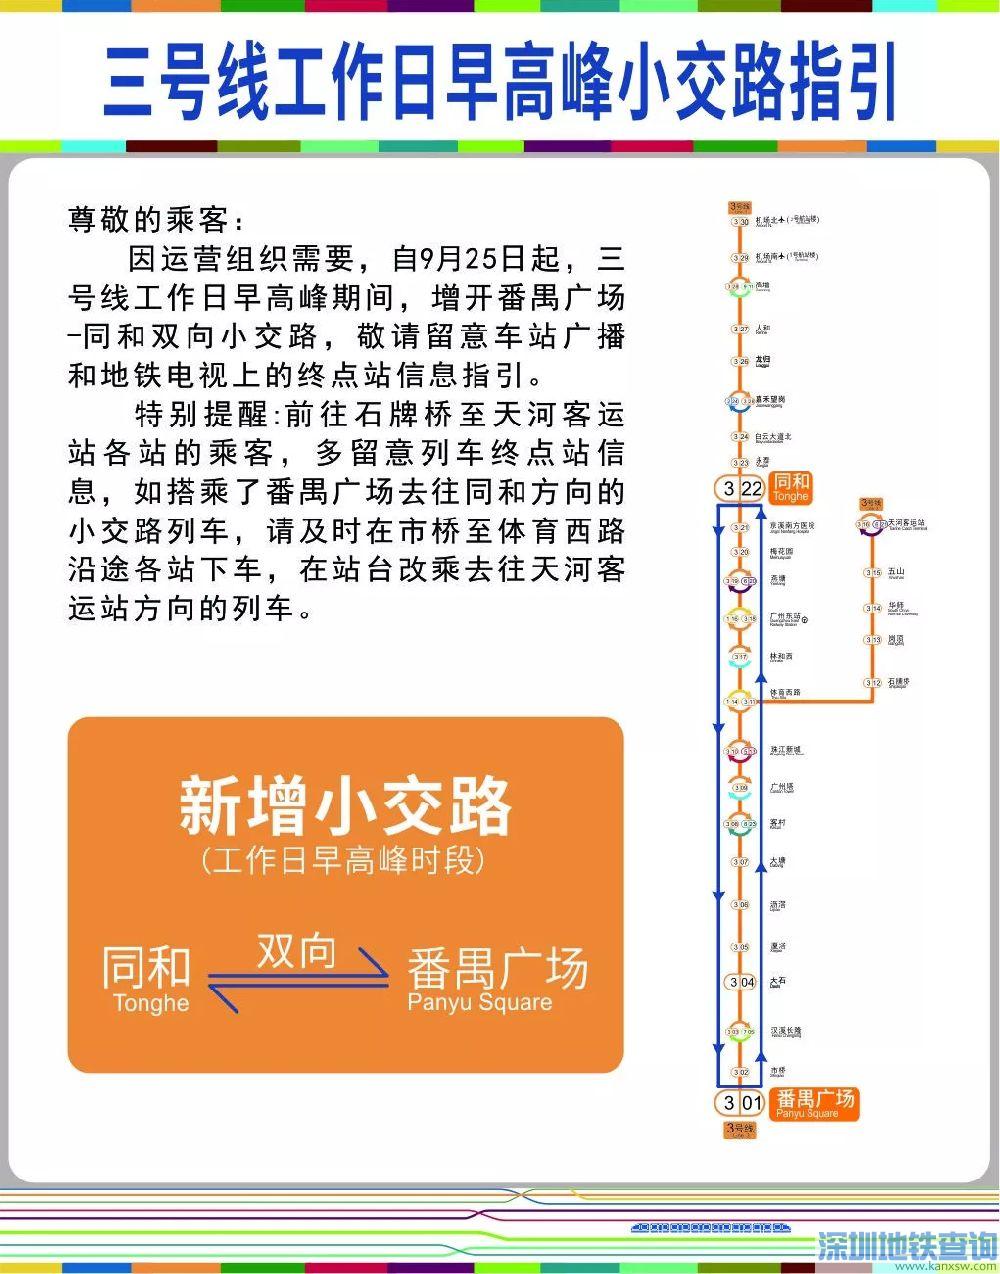 广州地铁3号线2018年9月25日起增开番禺广场至同和小交路 具体详情